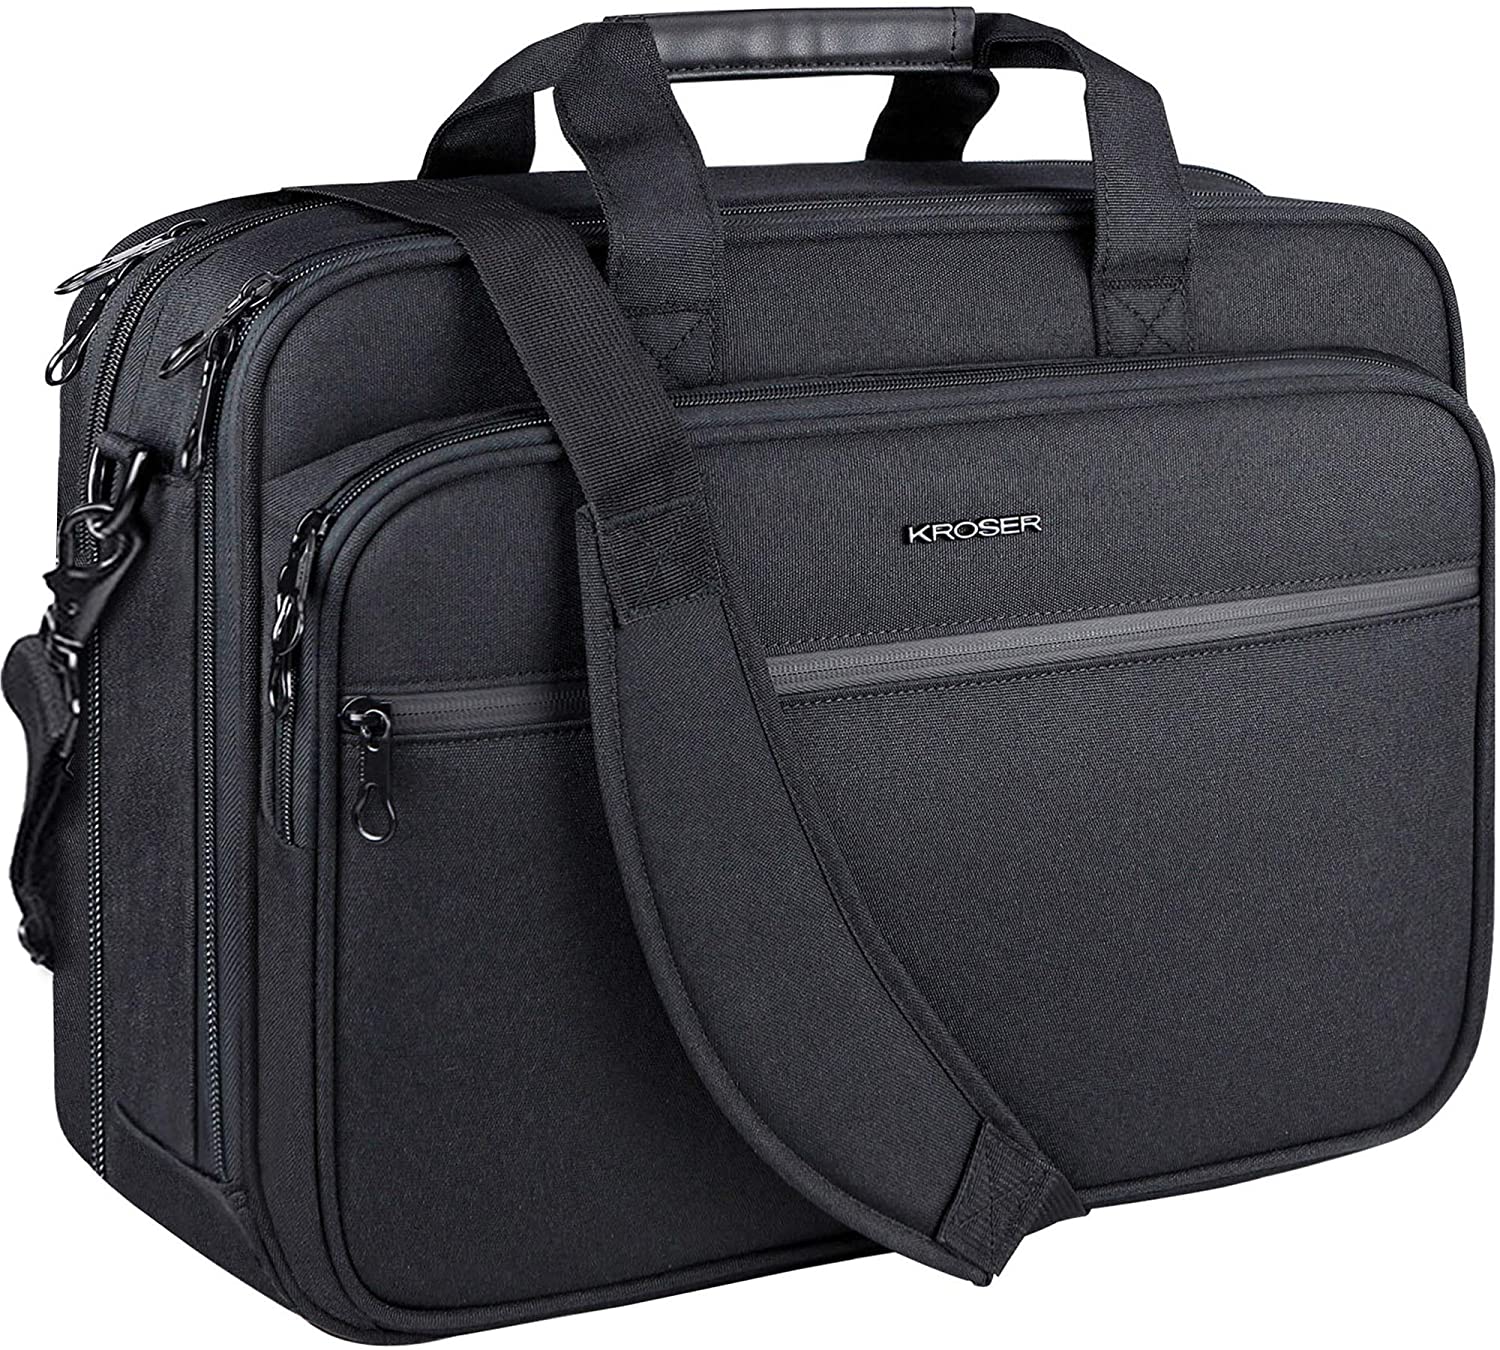 KROSER, KROSER 18 Laptop Bag Premium Laptop Briefcase Fits Up to 17.3 Inch Laptop Expandable Water-Repellent Shoulder Messenger Bag Computer Bag with RFID Pockets for Travel/Business/School/Men/Women-Black